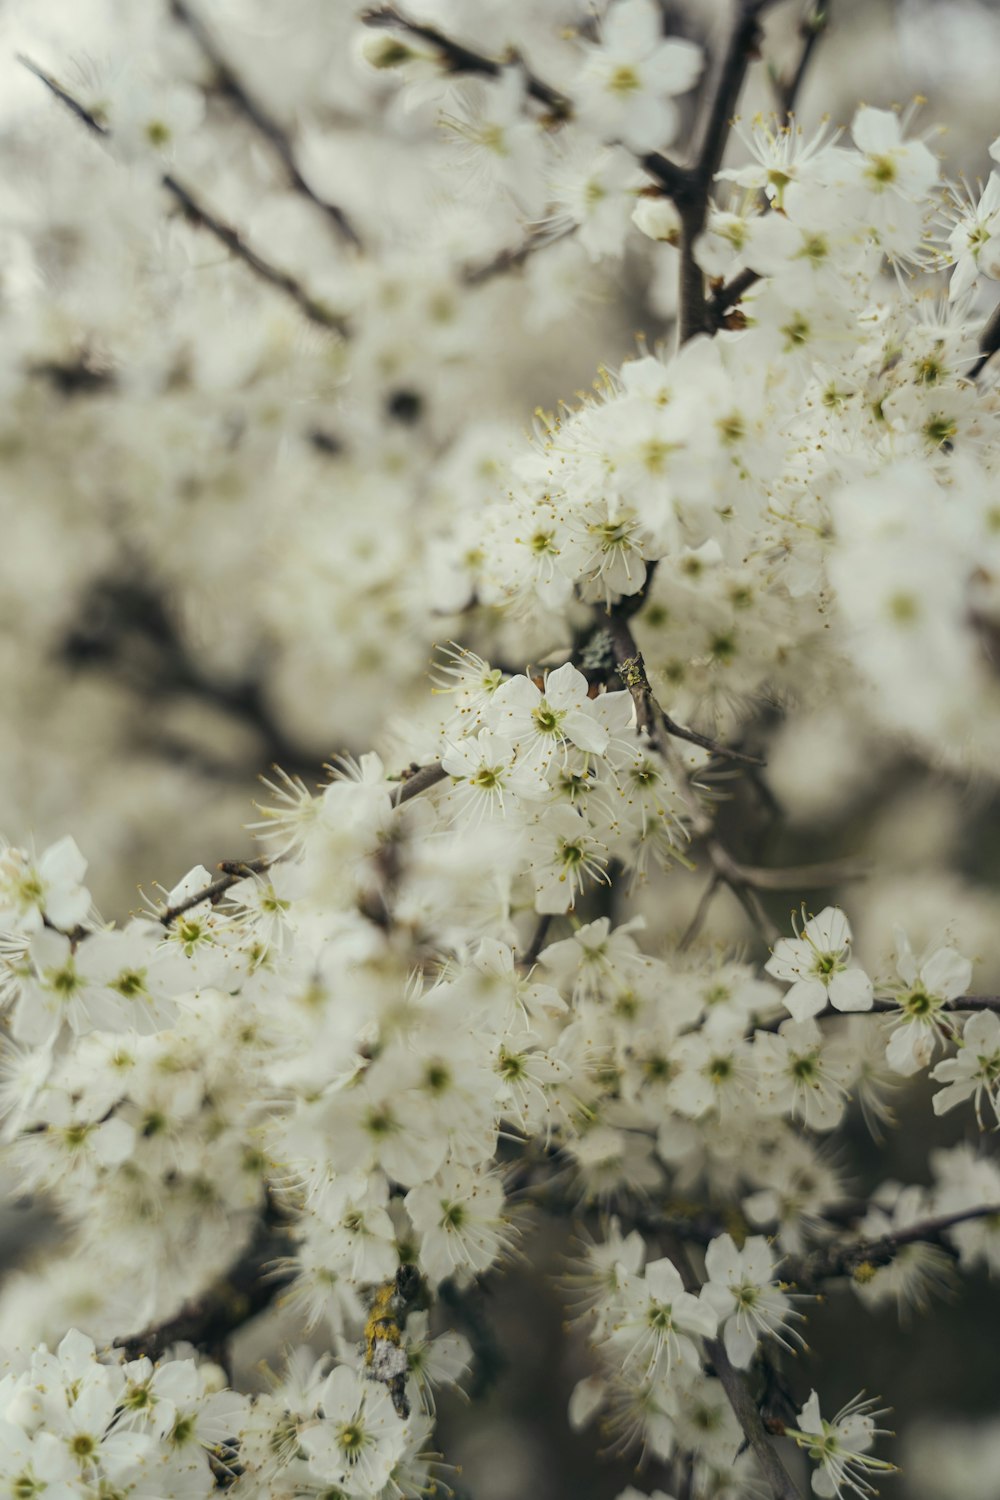 gros plan d’un arbre avec des fleurs blanches